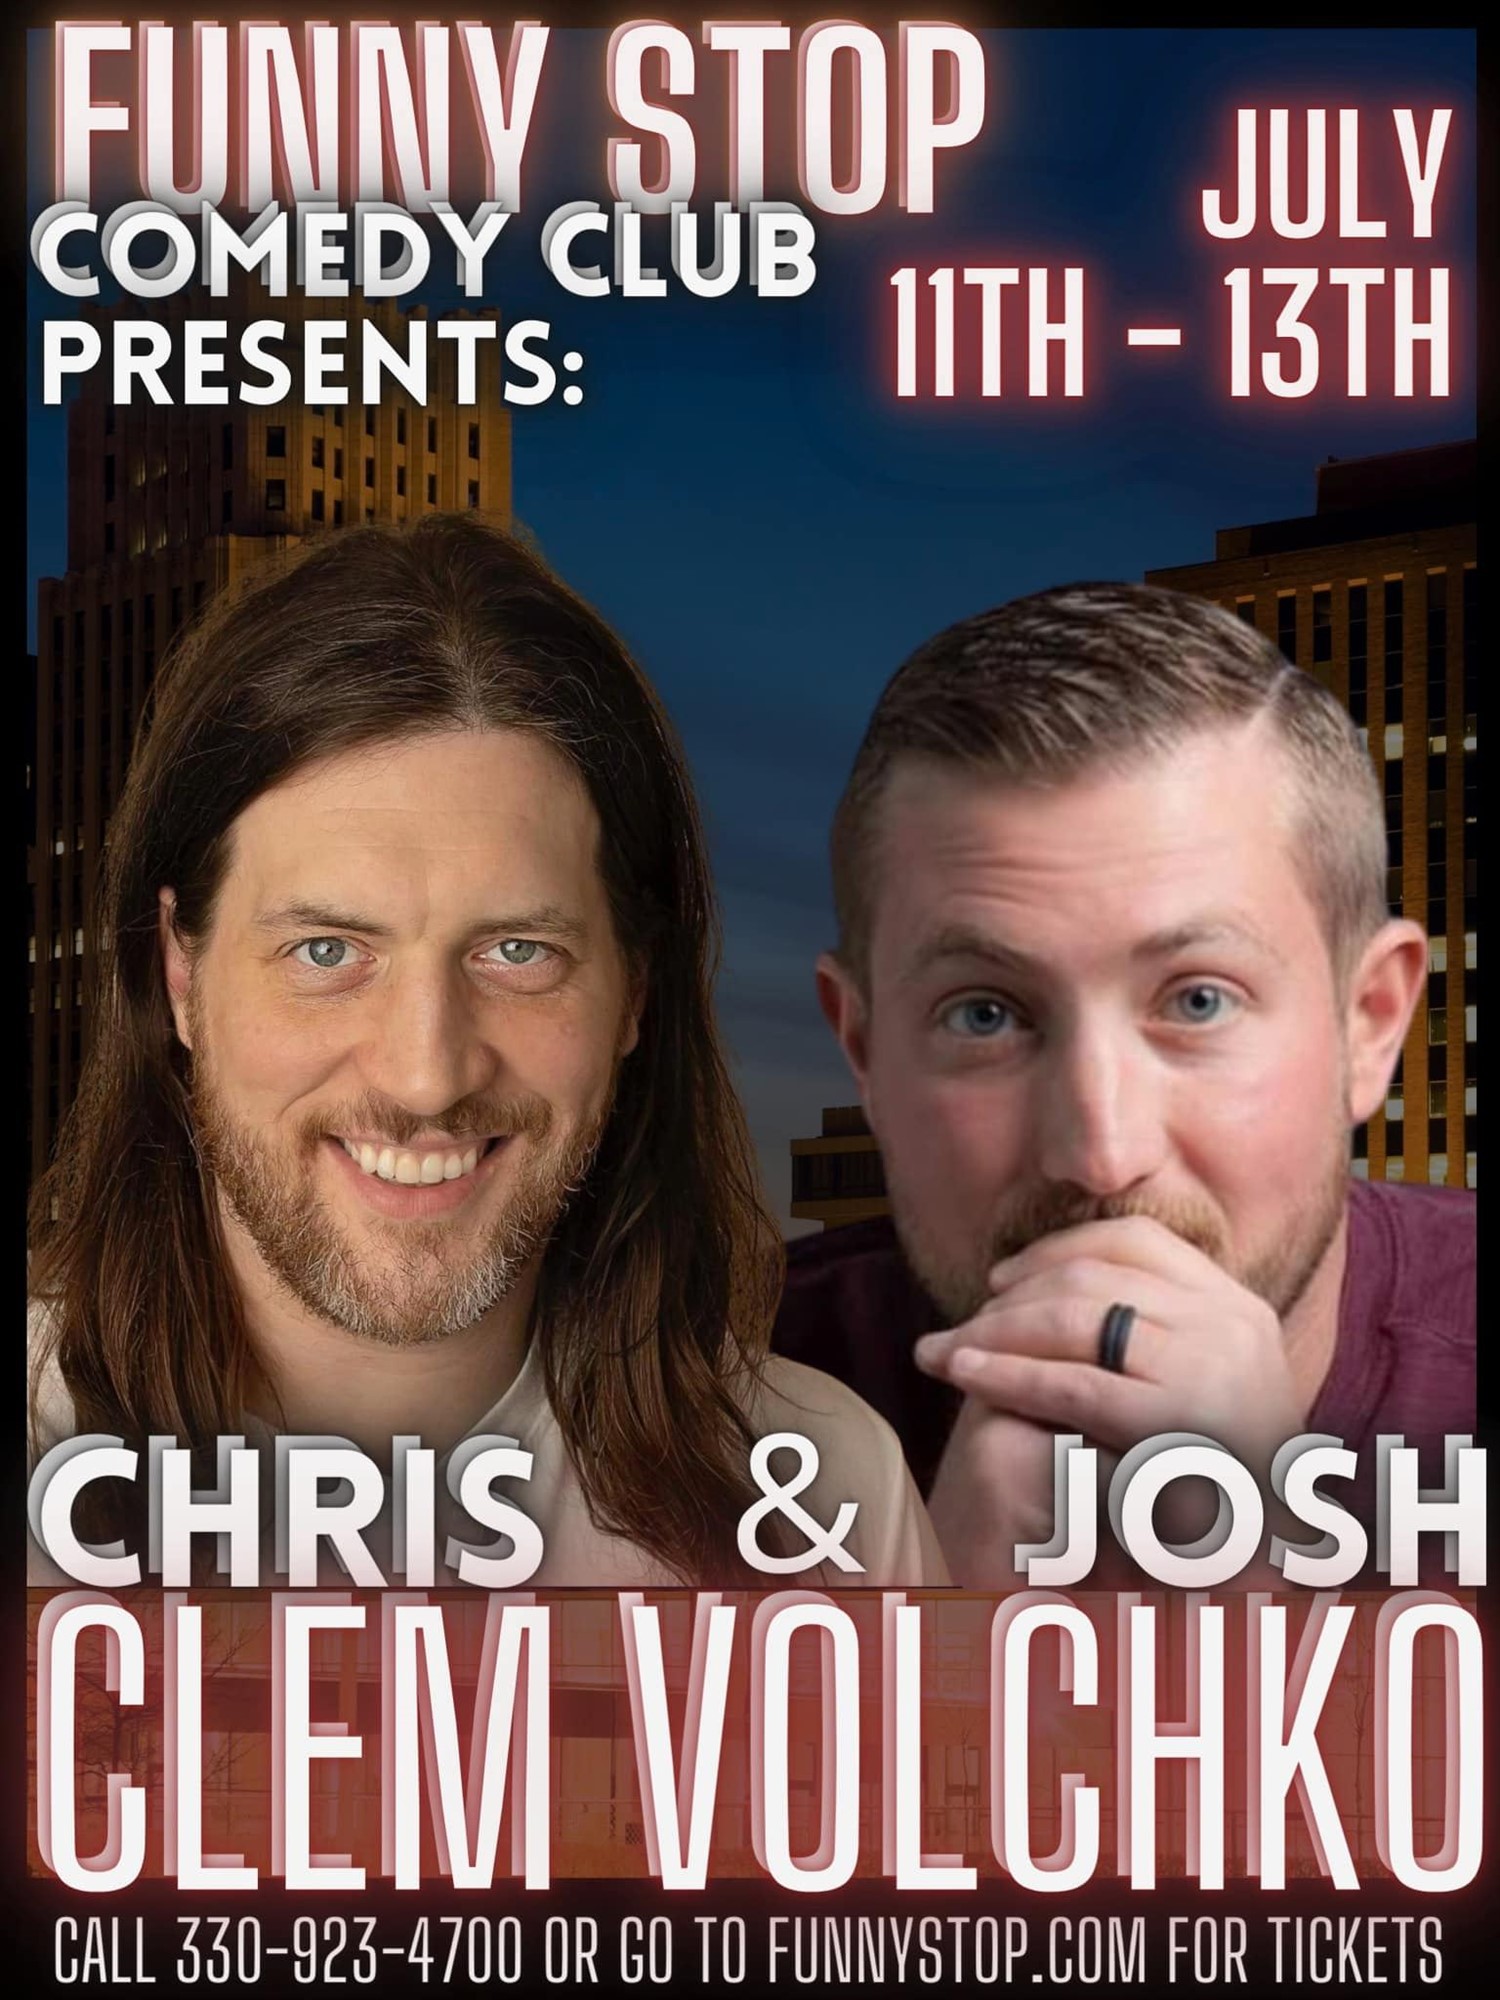 Chris Clem & Josh Volchko - Sat. 7:30PM Show Funny Stop Comedy Club on juil. 13, 19:30@Funny Stop Comedy Club - Achetez des billets et obtenez des informations surFunny Stop funnystop.online